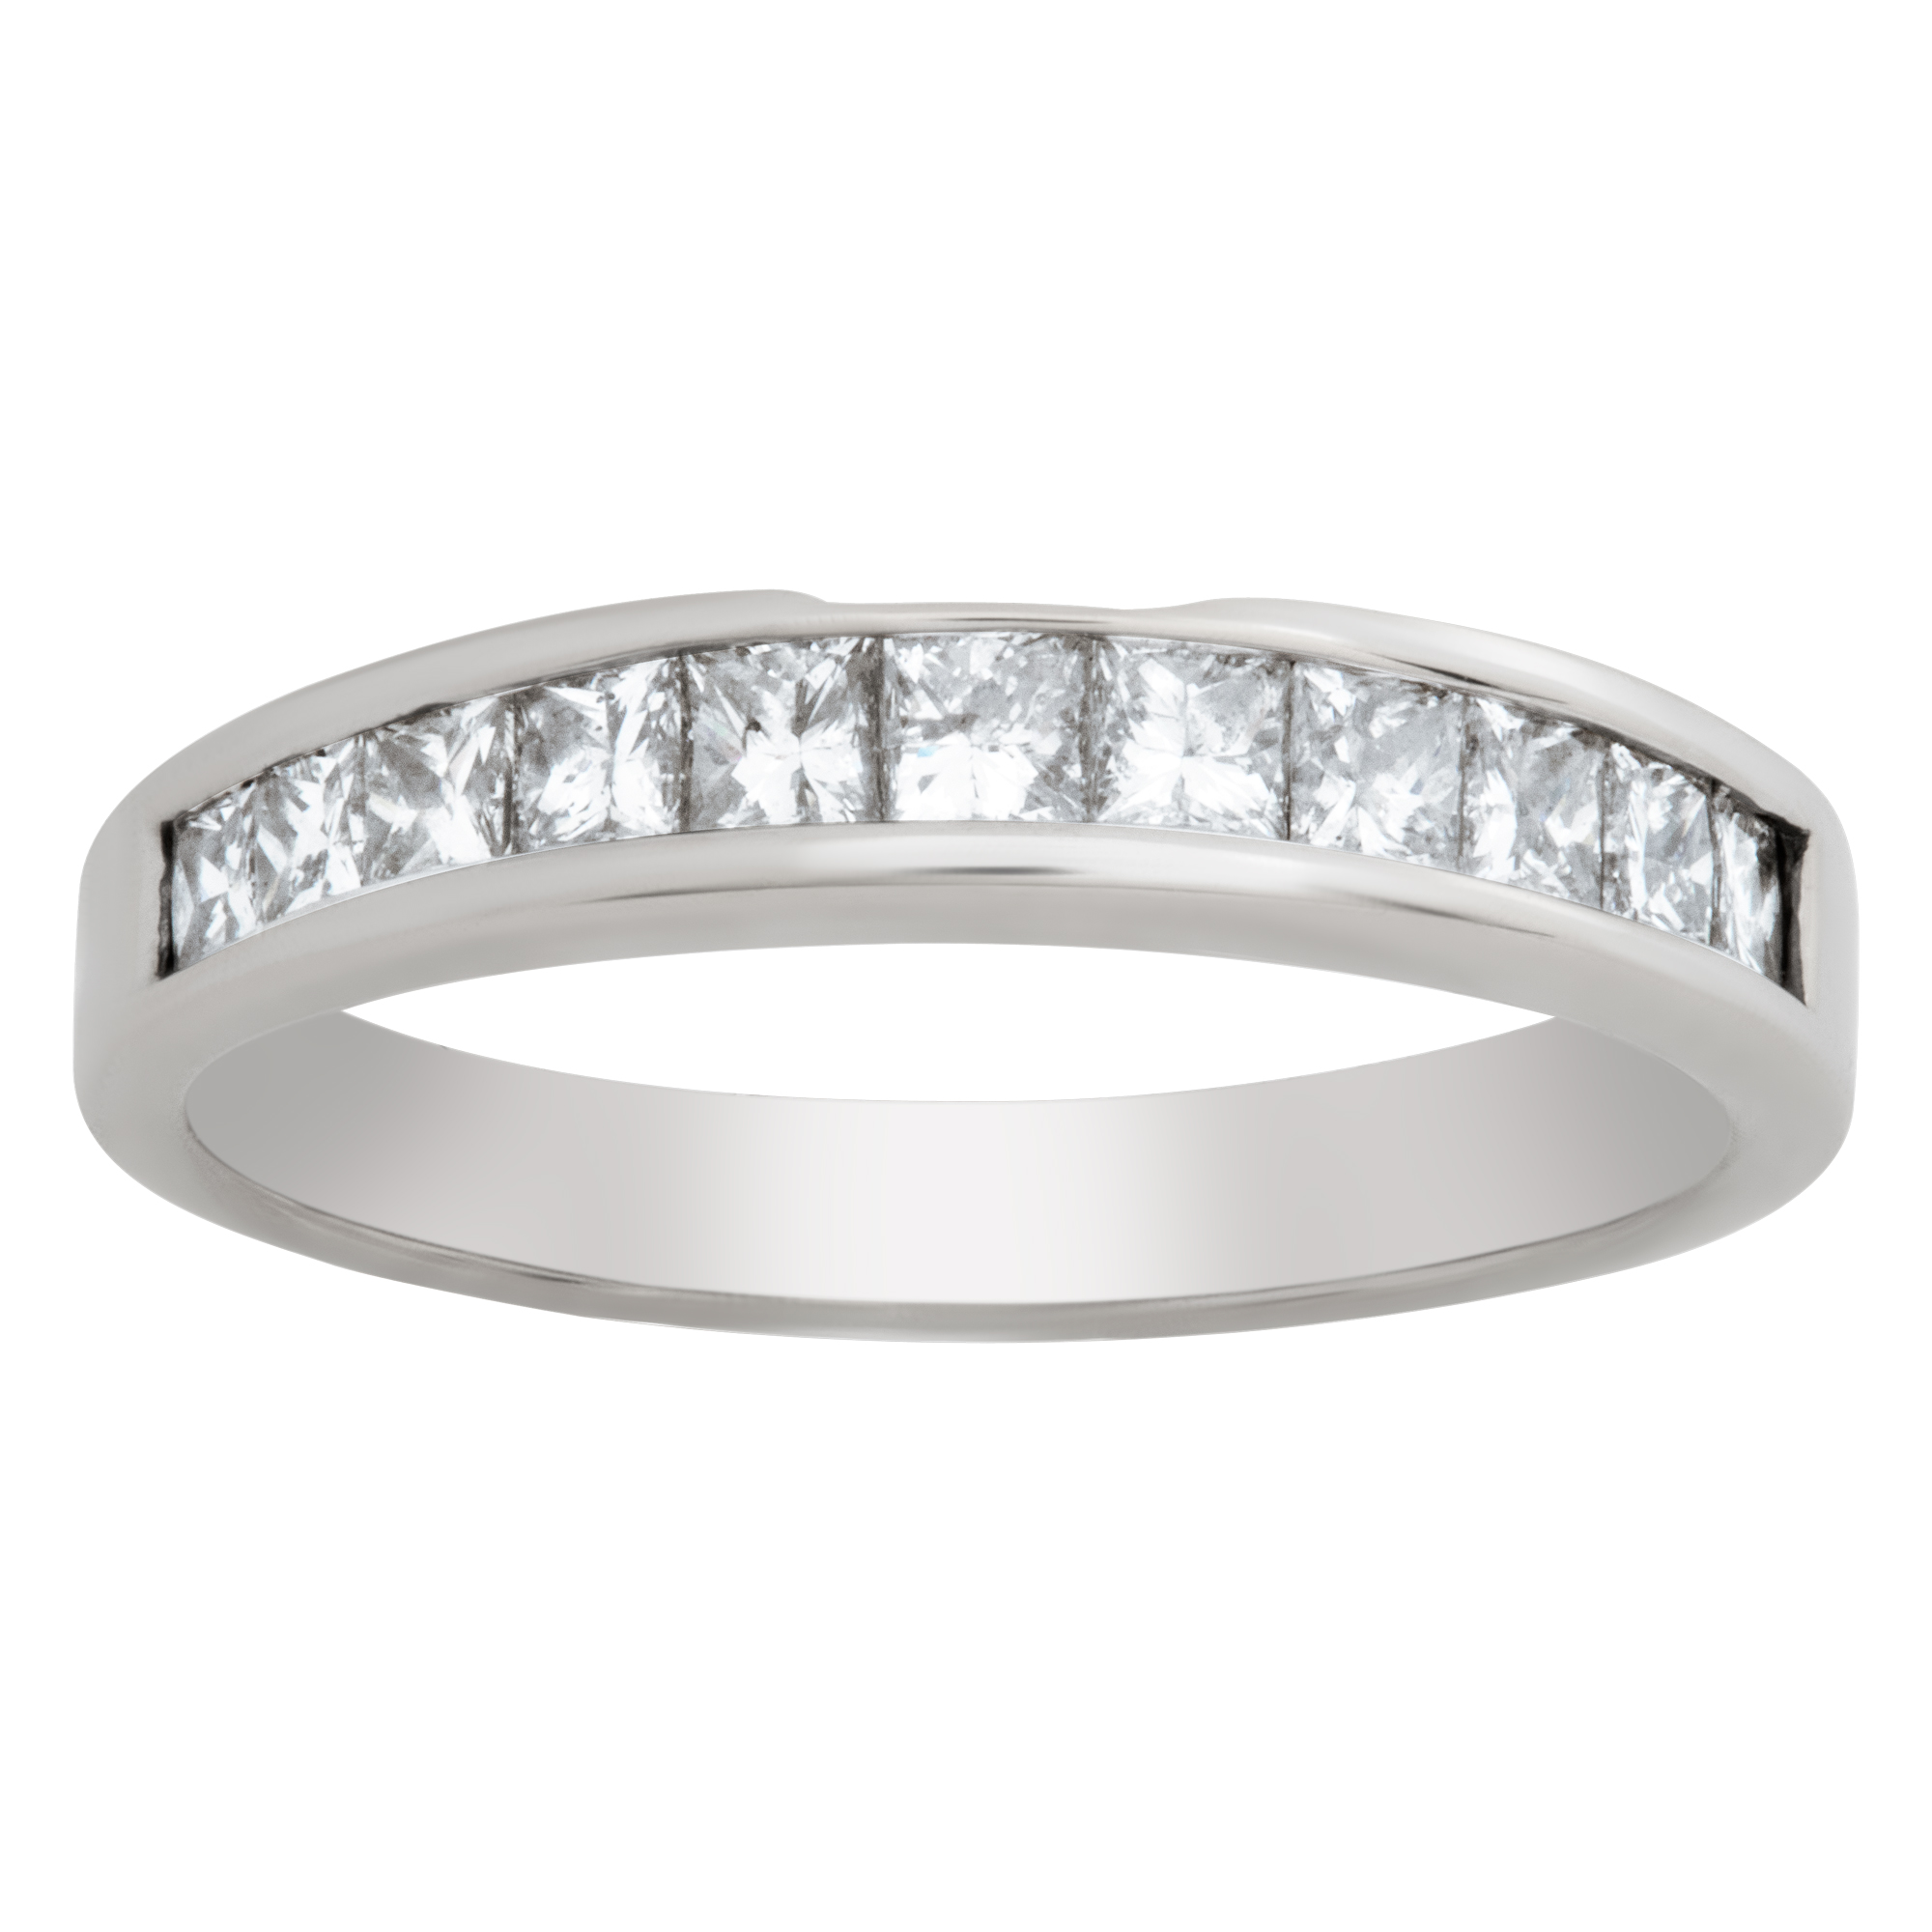 Diamond Semi Eternity ring in 14k white gold